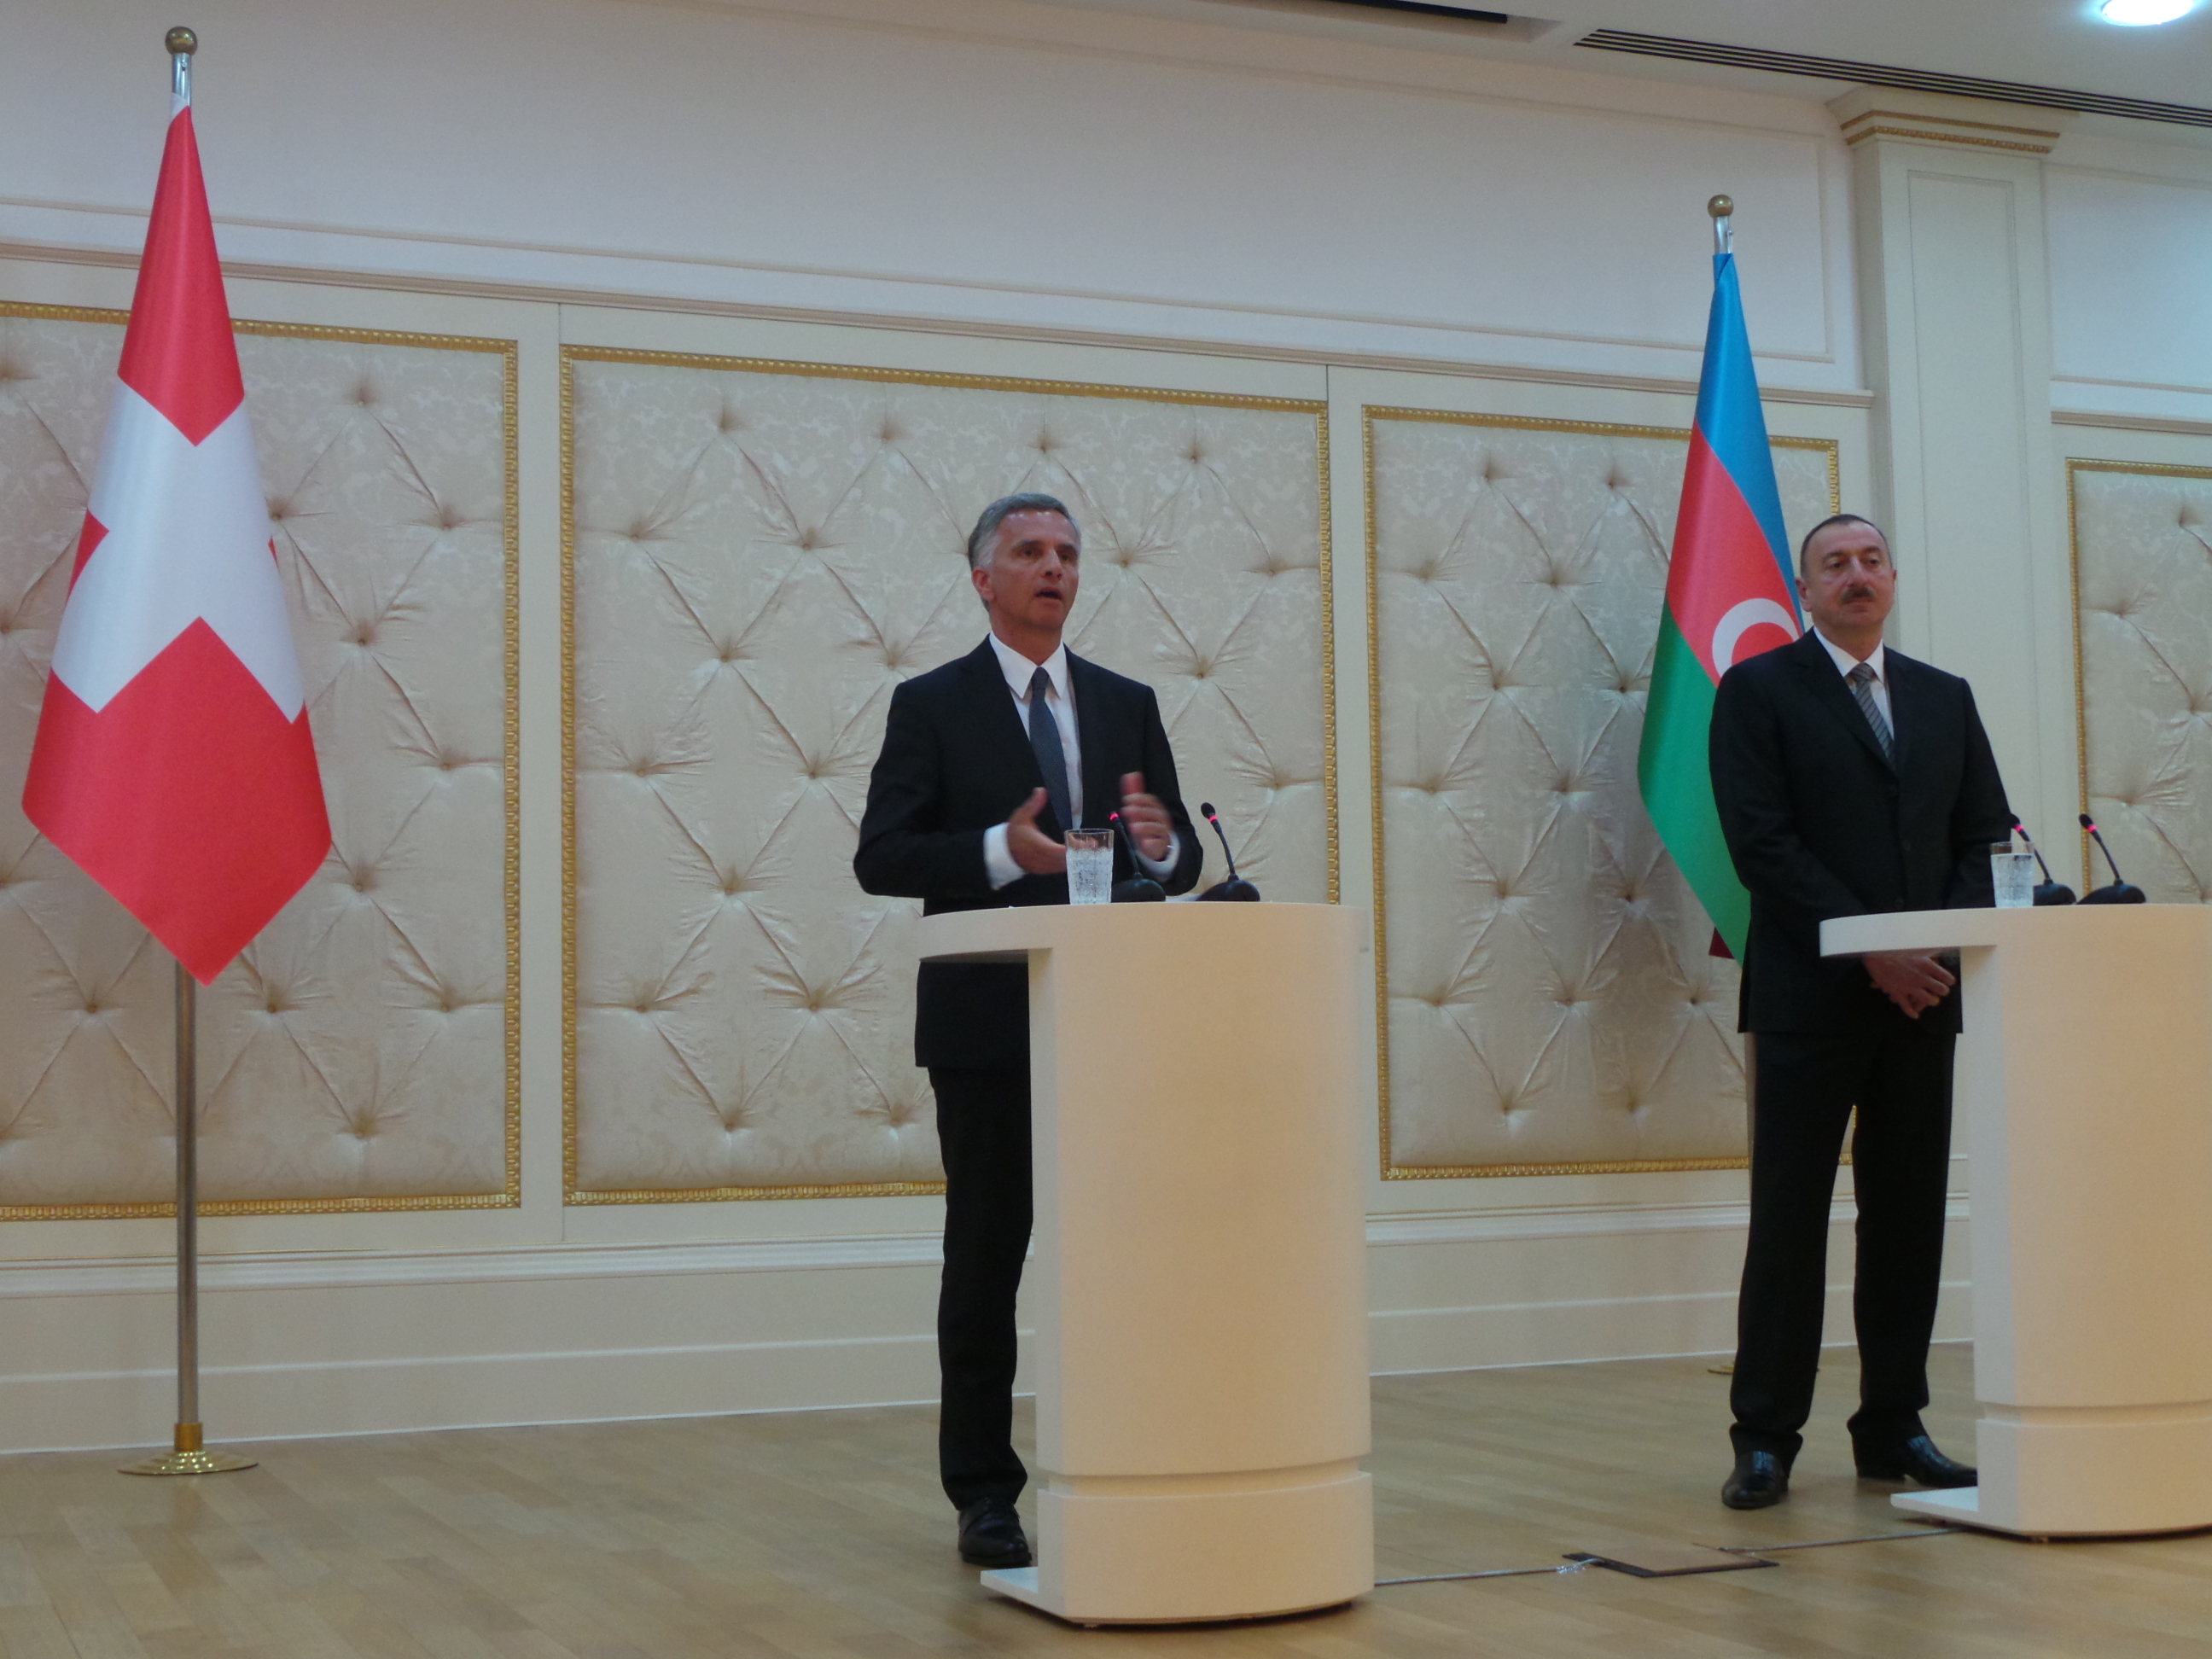 Medienkonferenz nach dem Gespräch von Bundespräsident Didier Burkhalter und dem aserbaidschanischen Präsidenten Ilham Aliyev.